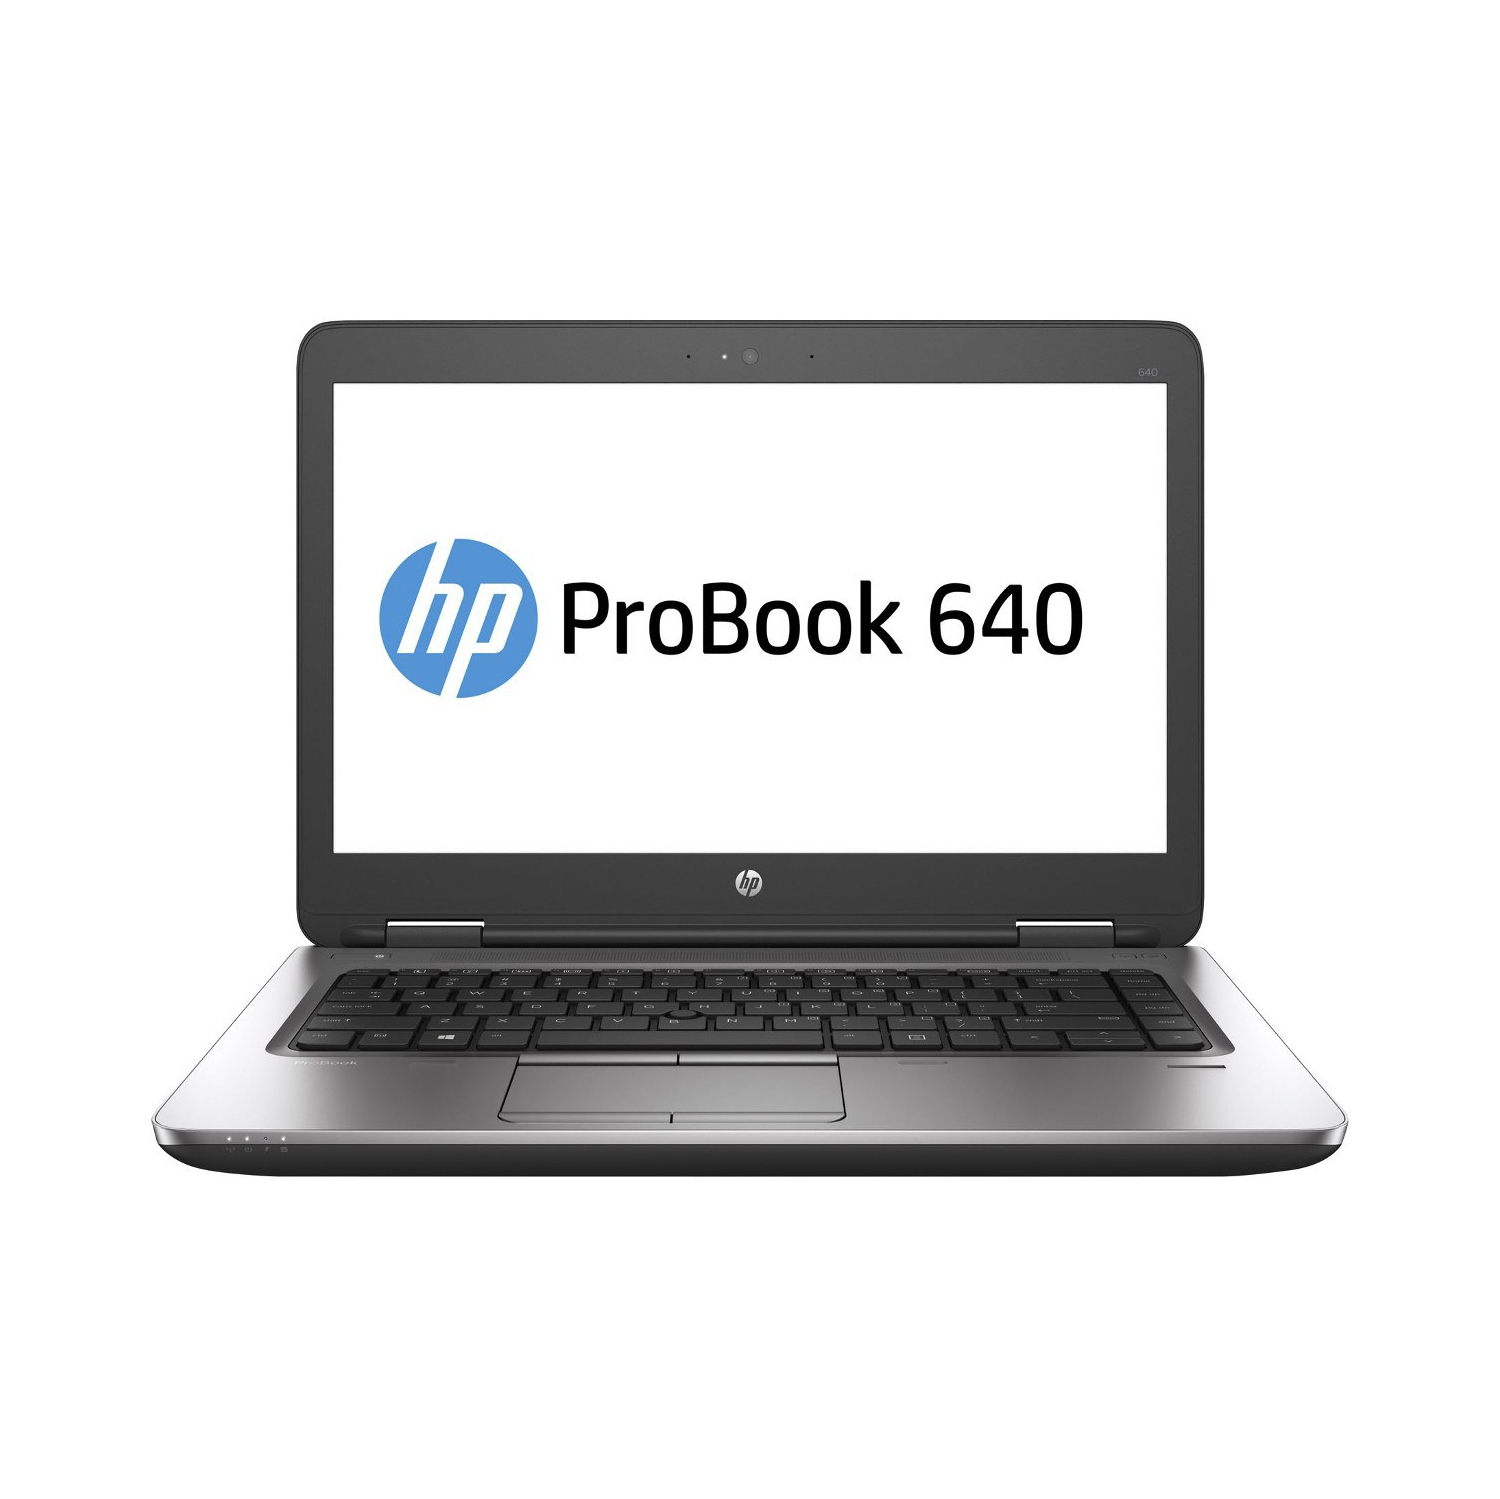 Refurbished (Excellent) - HP ProBook 640 G2 14" Laptop, Intel Core i7 6600U up to 3.4G, 16G DDR4, 1T, VGA, DP, USB Type-C, W10P64 (EN/FR/ES)